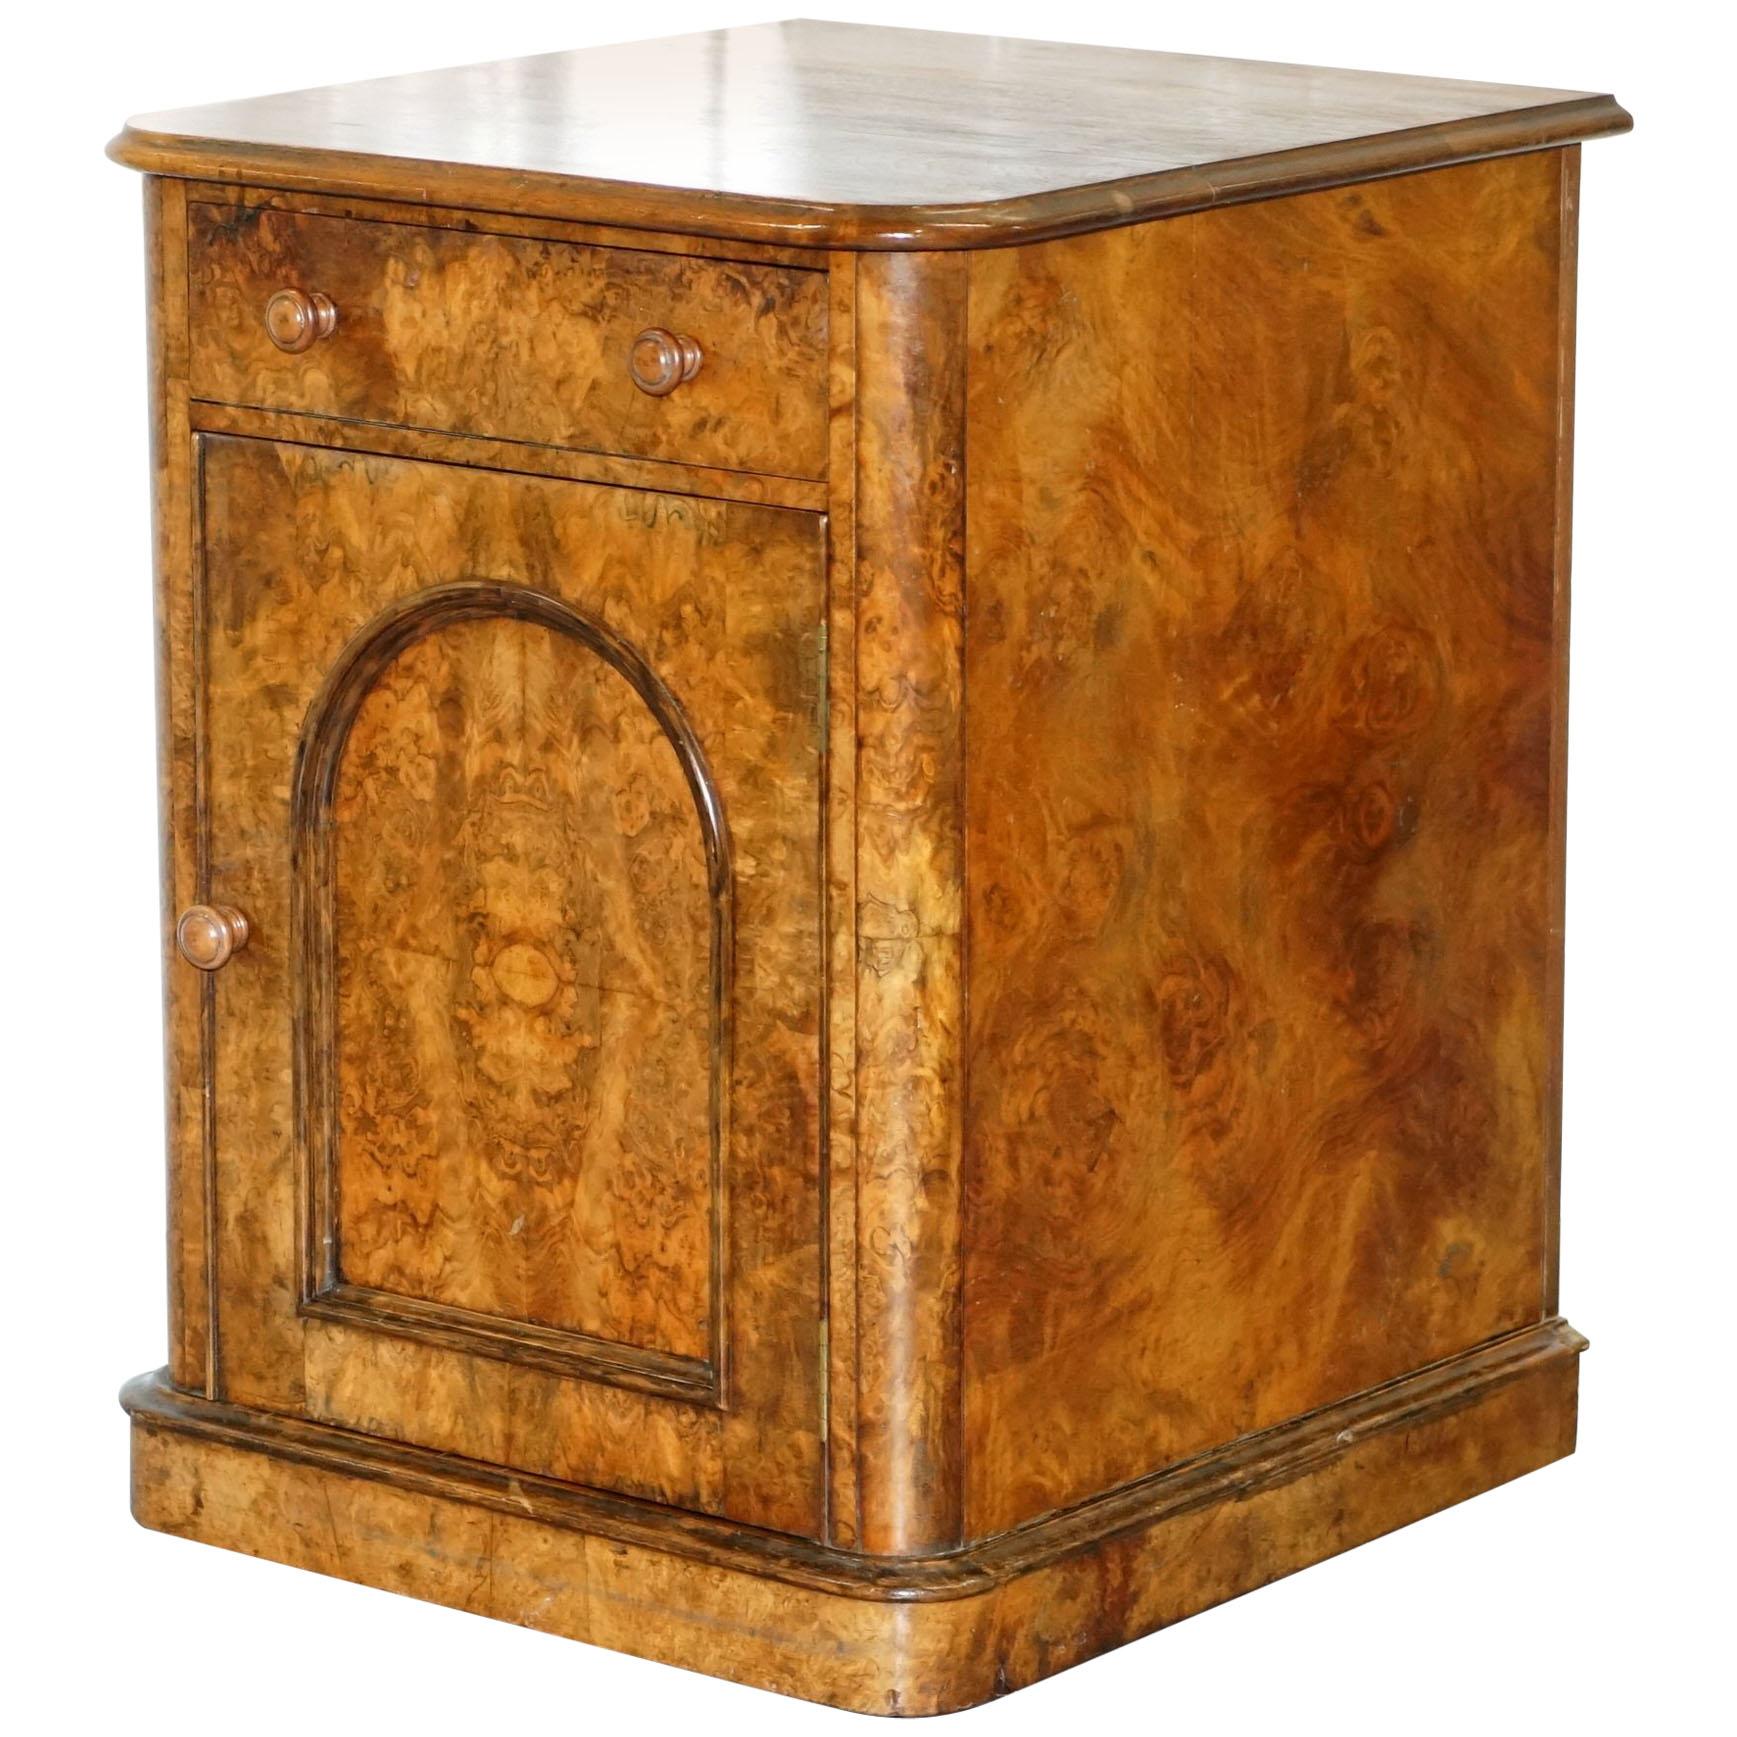 Lovely 1860 Victorian Burr Walnut Side Table Cupboard Cabinet Huge Wood Castors